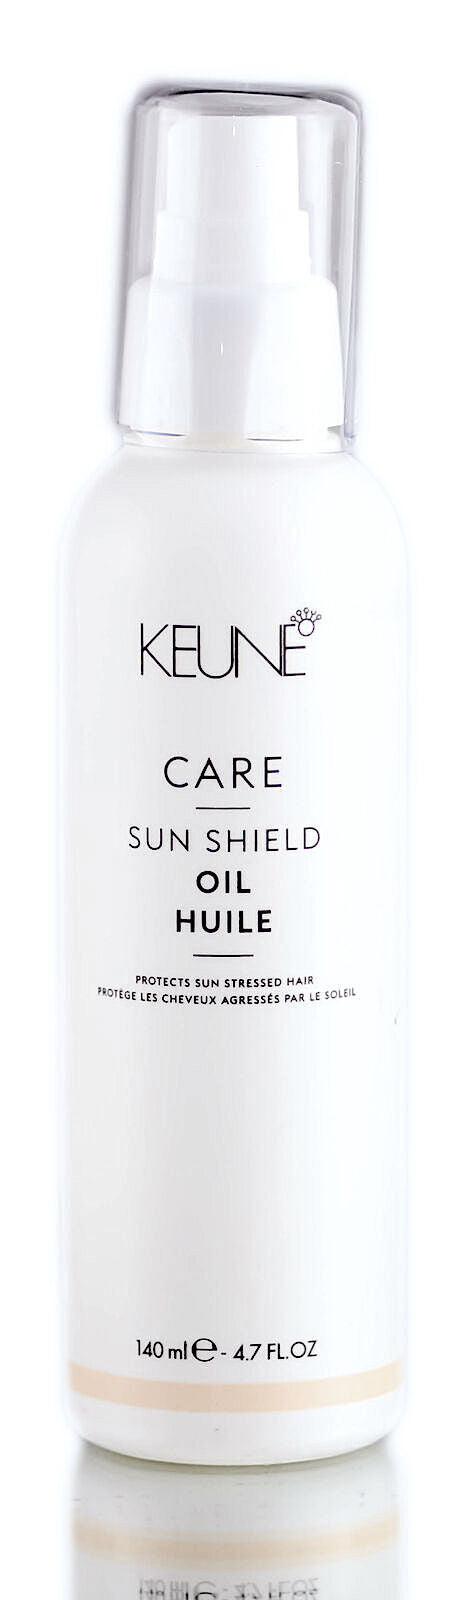 Sun Shield Oil 4.7oz - Keune Care